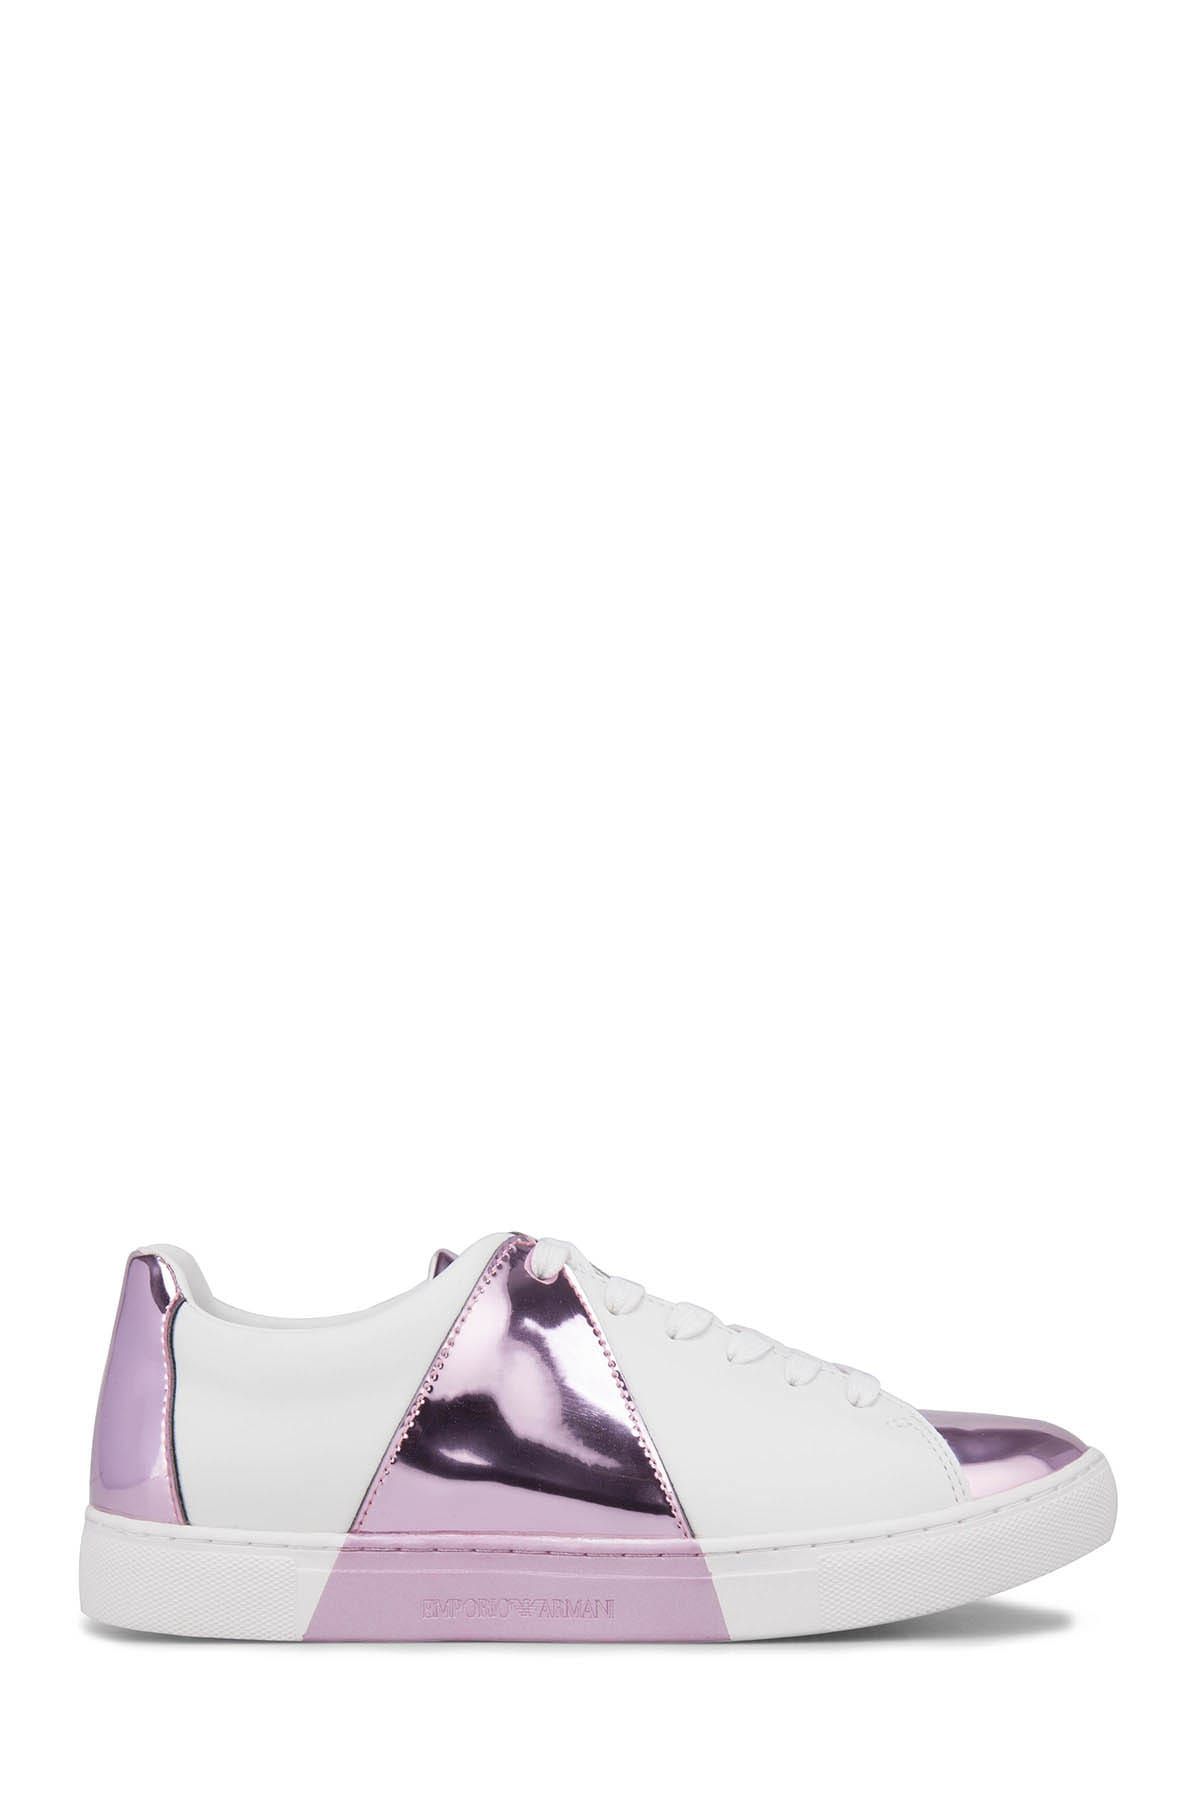 Emporio Armani Kadın Beyaz-Pembe Sneaker X3X067 XL811 D080